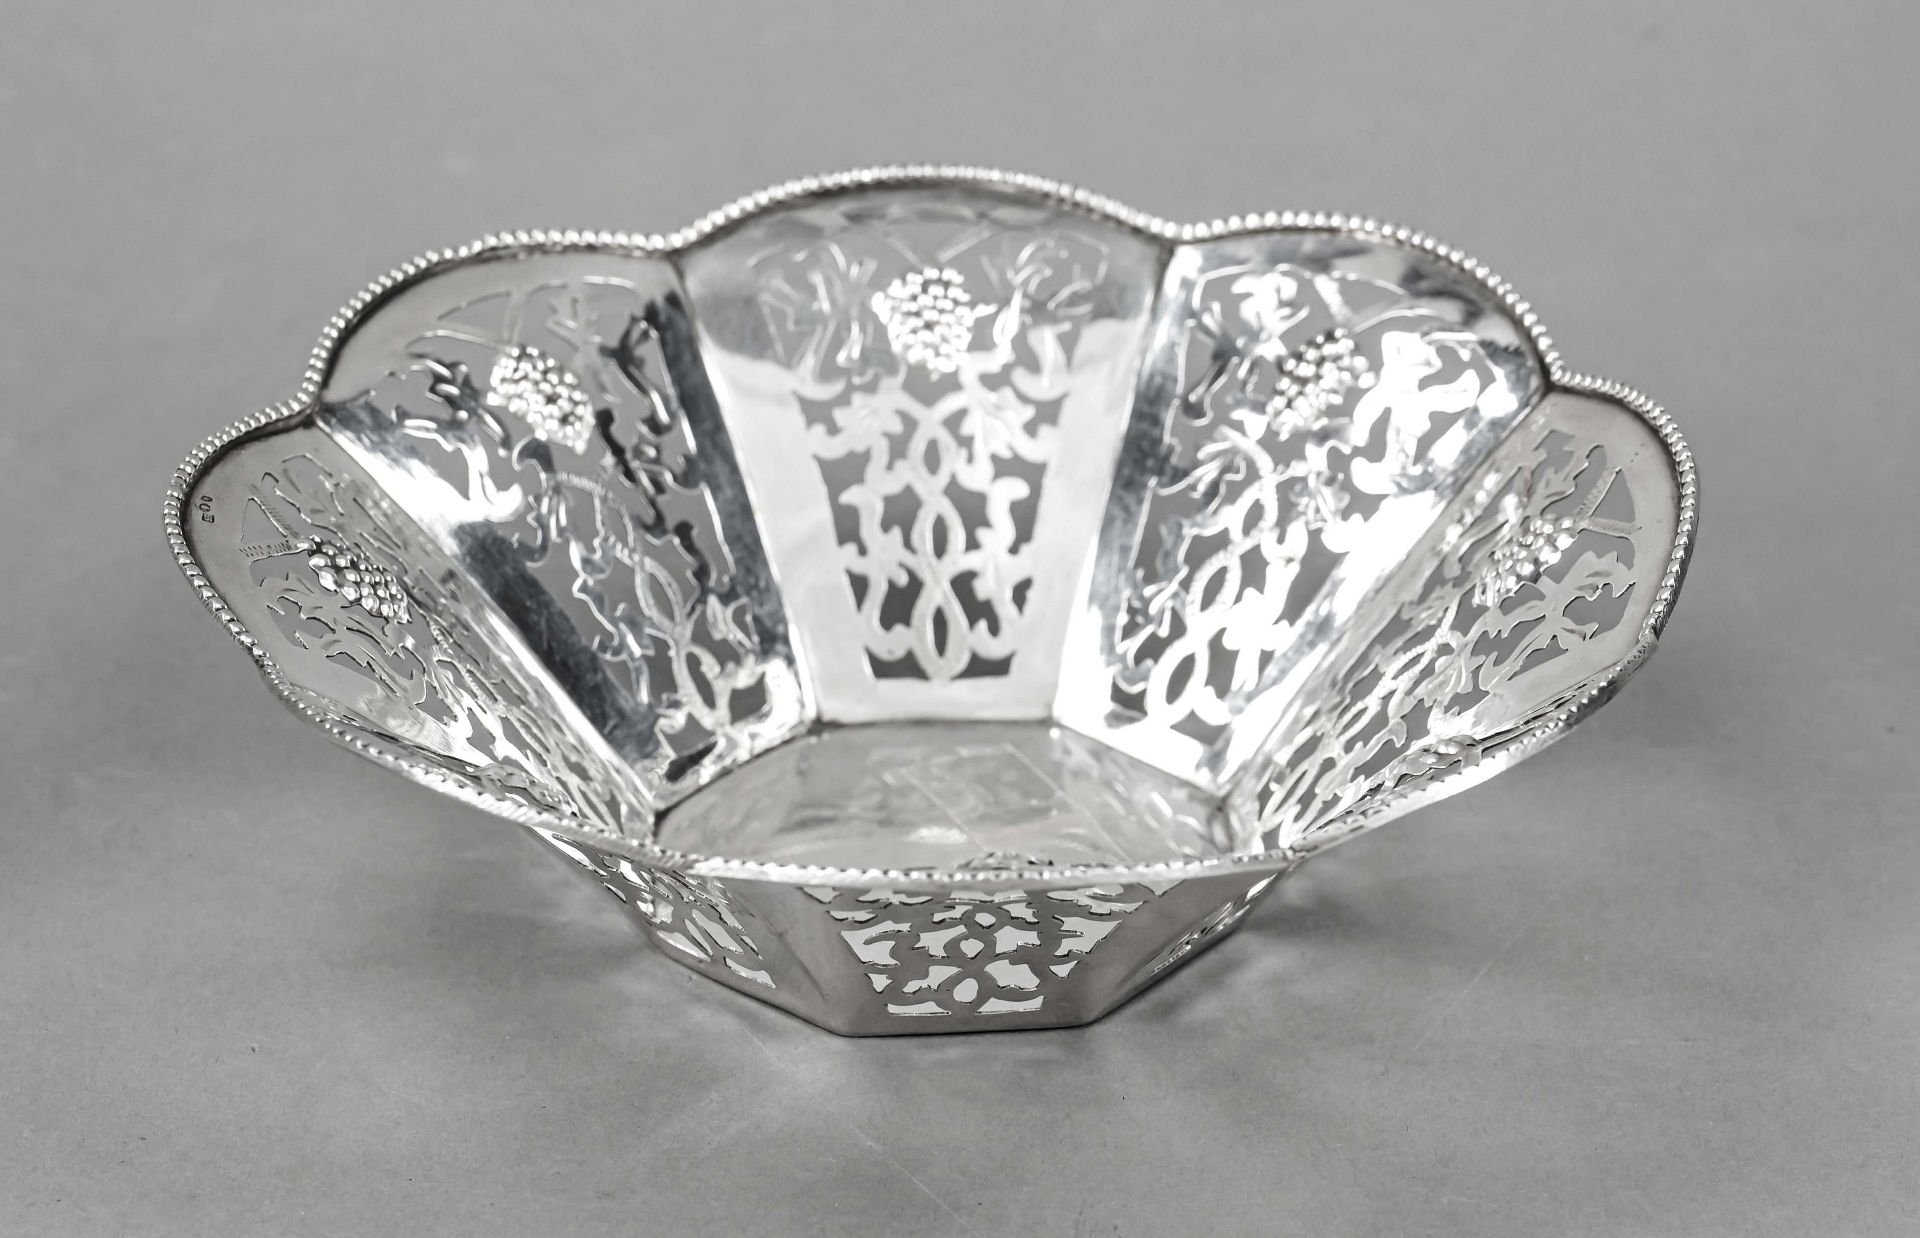 Flower-shaped breakthrough bowl, Poland, 20th century, city letter K for Krakow, silver 800/000, 8-